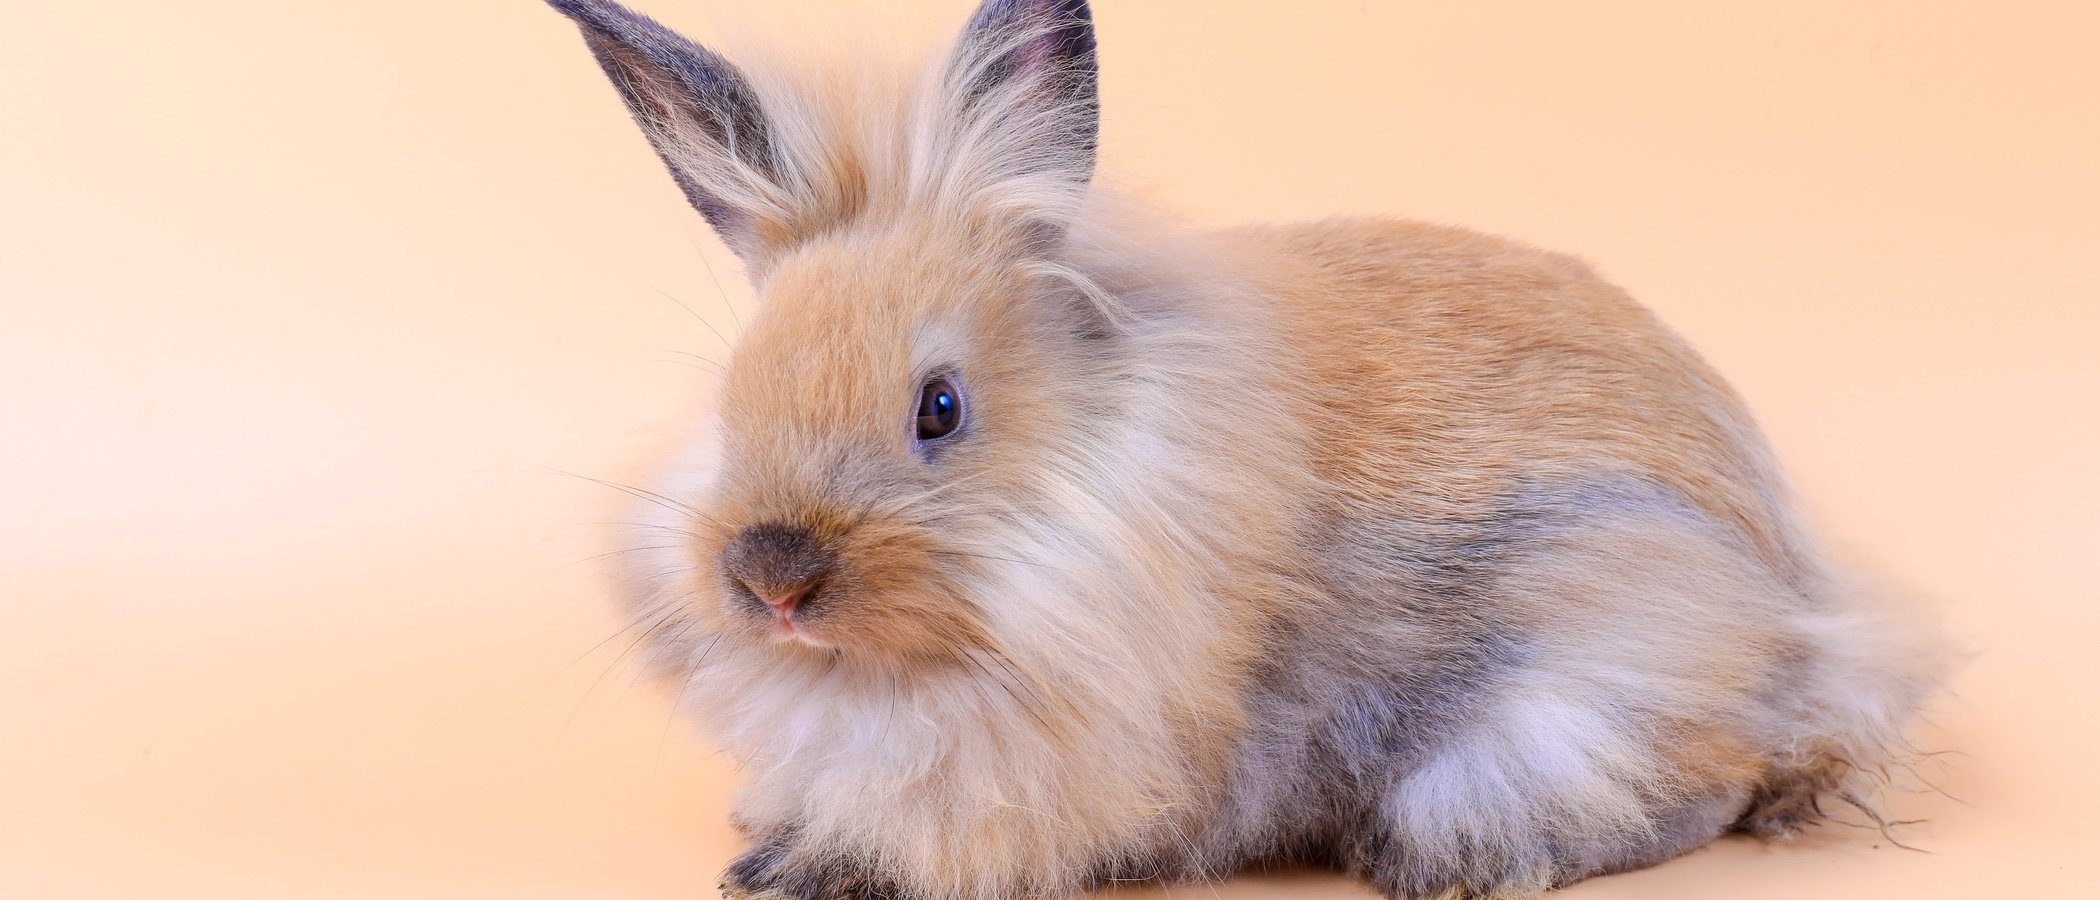 Estreñimiento en conejos: causas y formas de solucionarlo